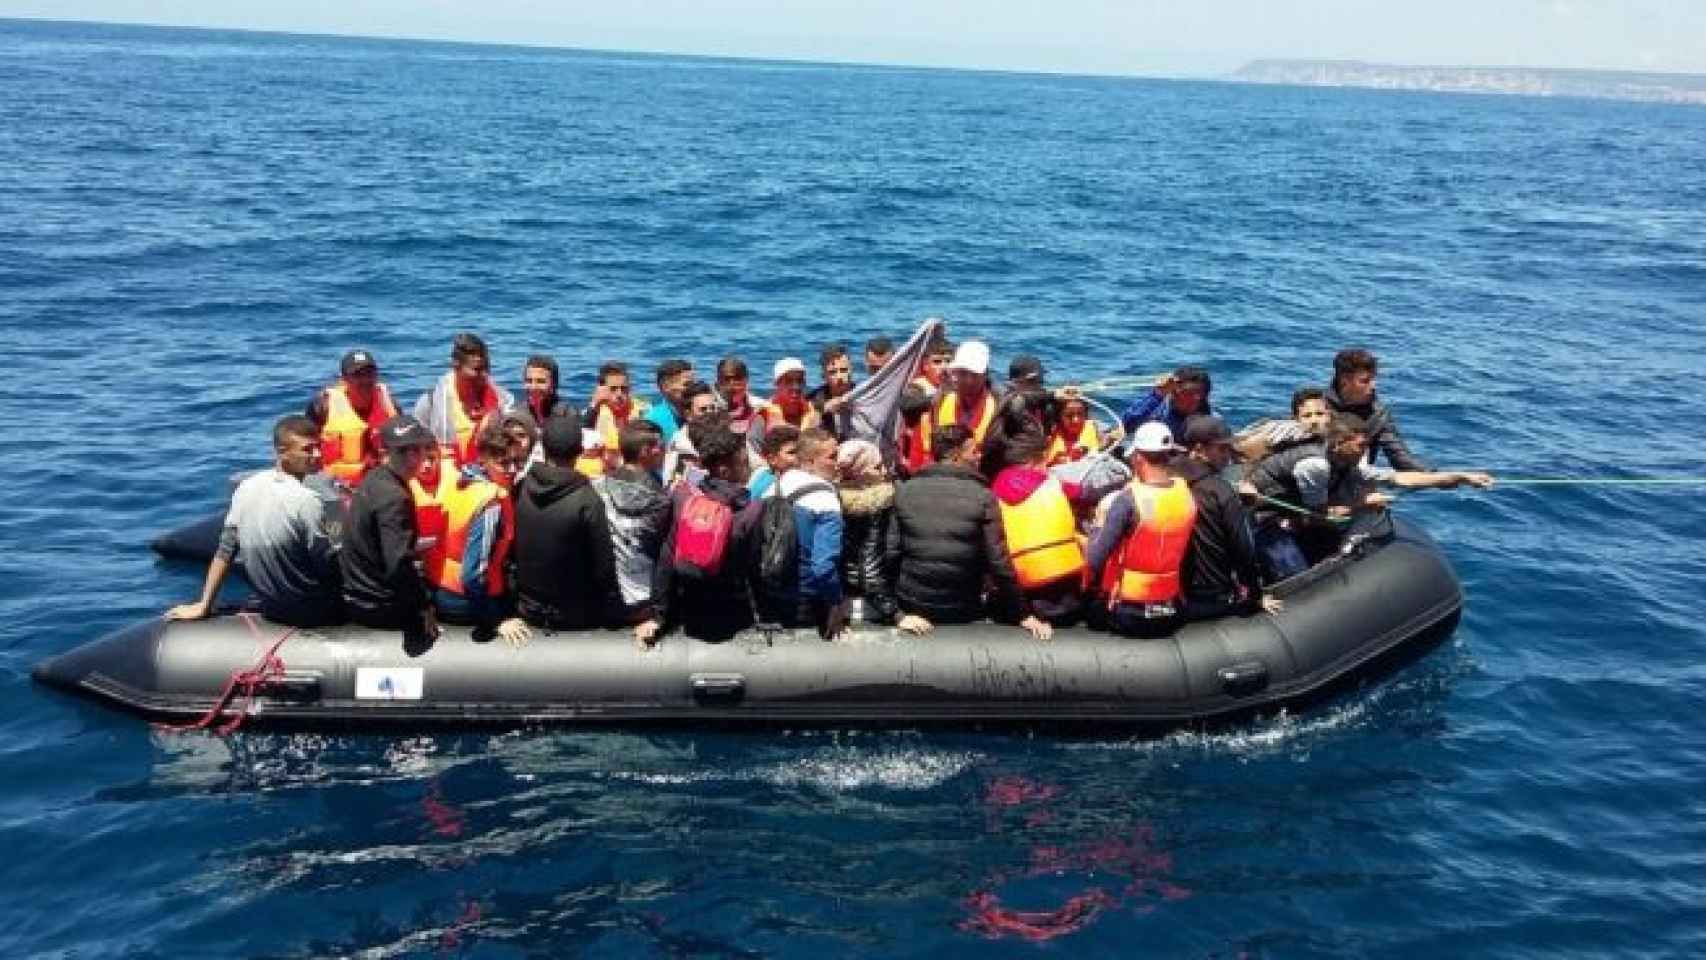 Inmigrantes a bordo de una lancha neumática, cerca de la costa.